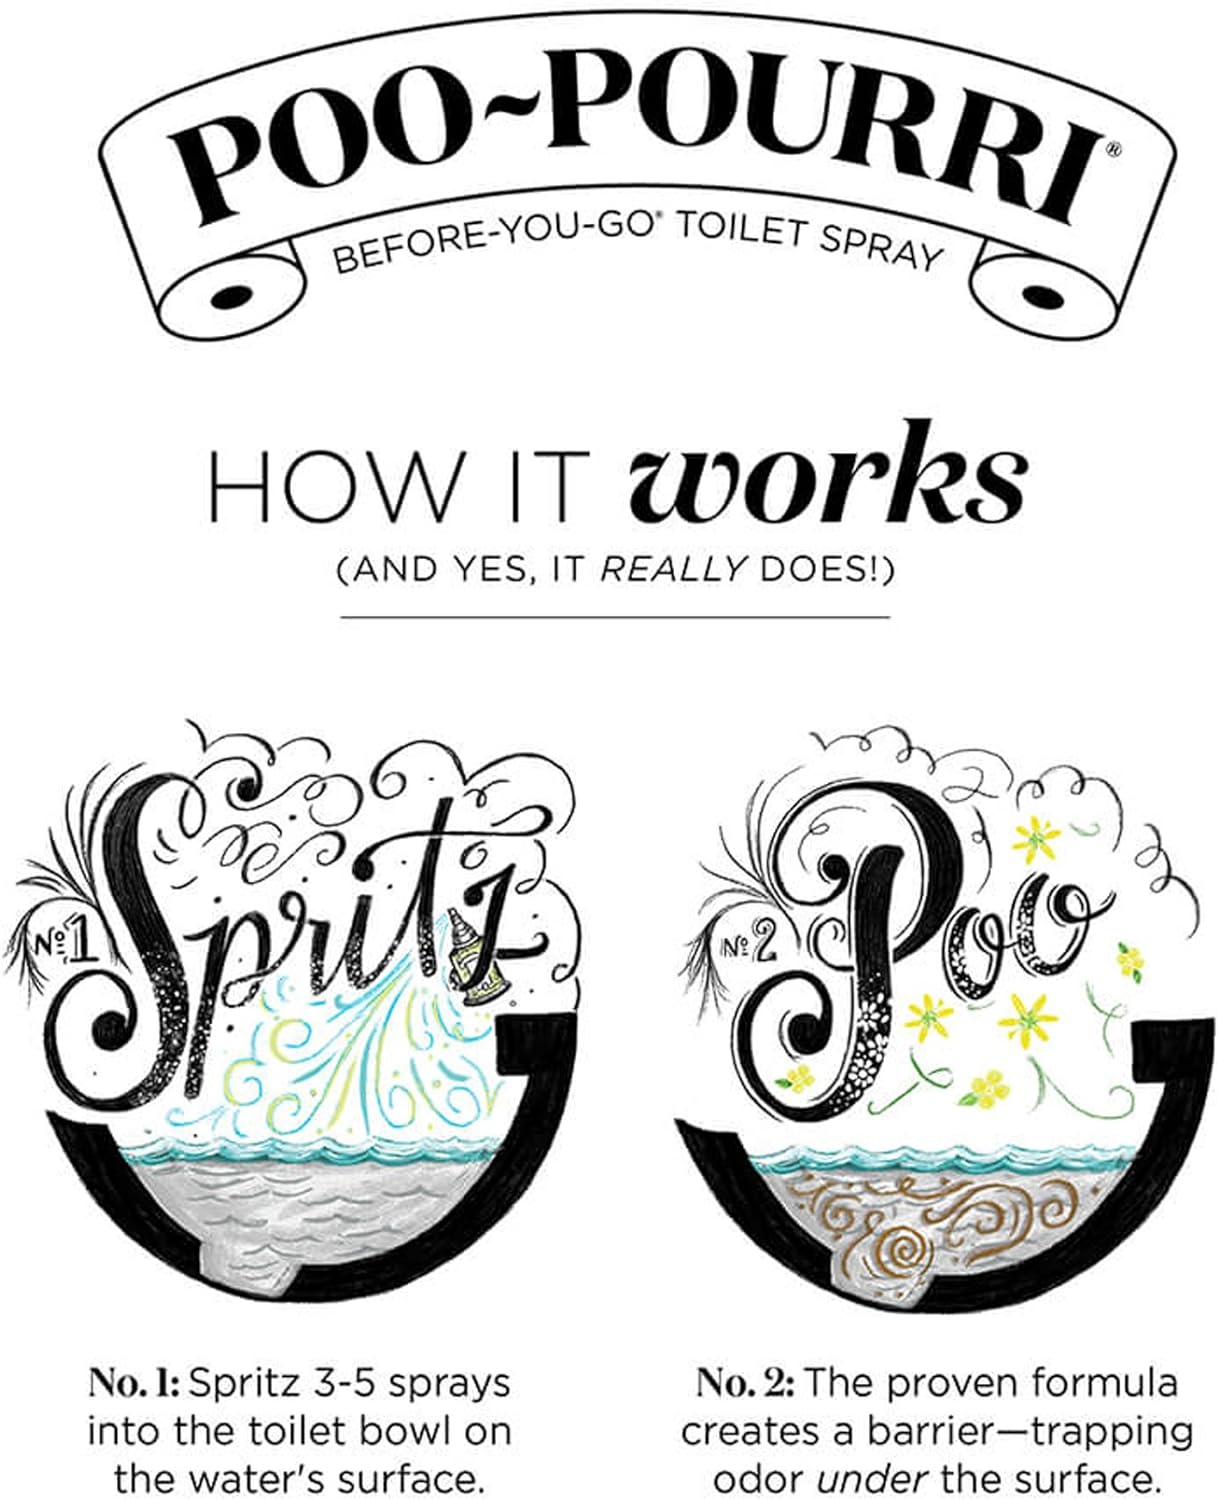 Poo-Pourri Before-You- go Toilet Spray, 2 oz, Smoky Woods Scent, 2 Fl Oz : Health & Household